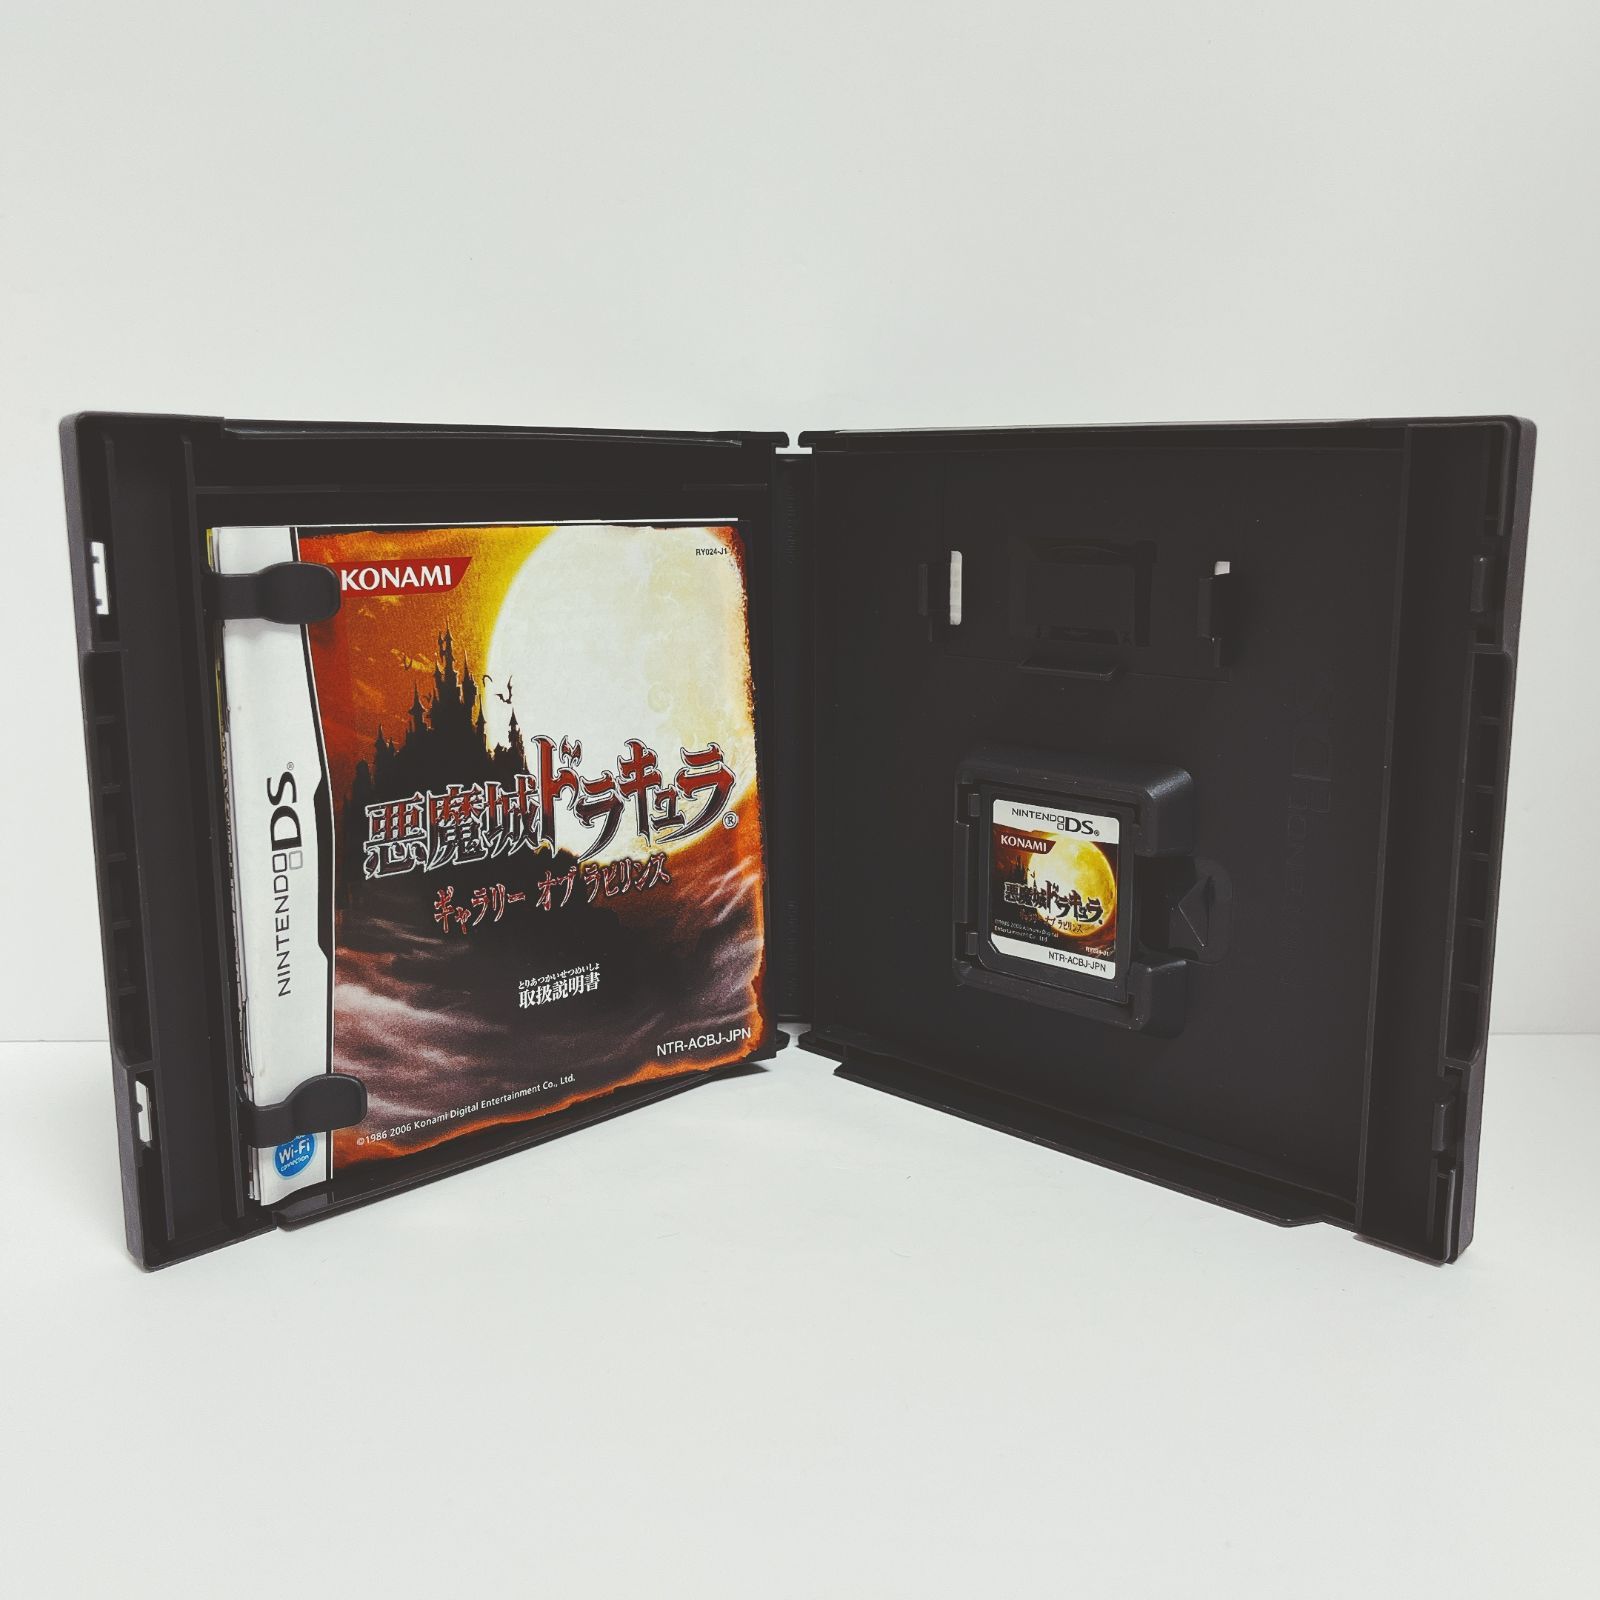 悪魔城ドラキュラ -ギャラリー オブ ラビリンス- DSソフト g0110